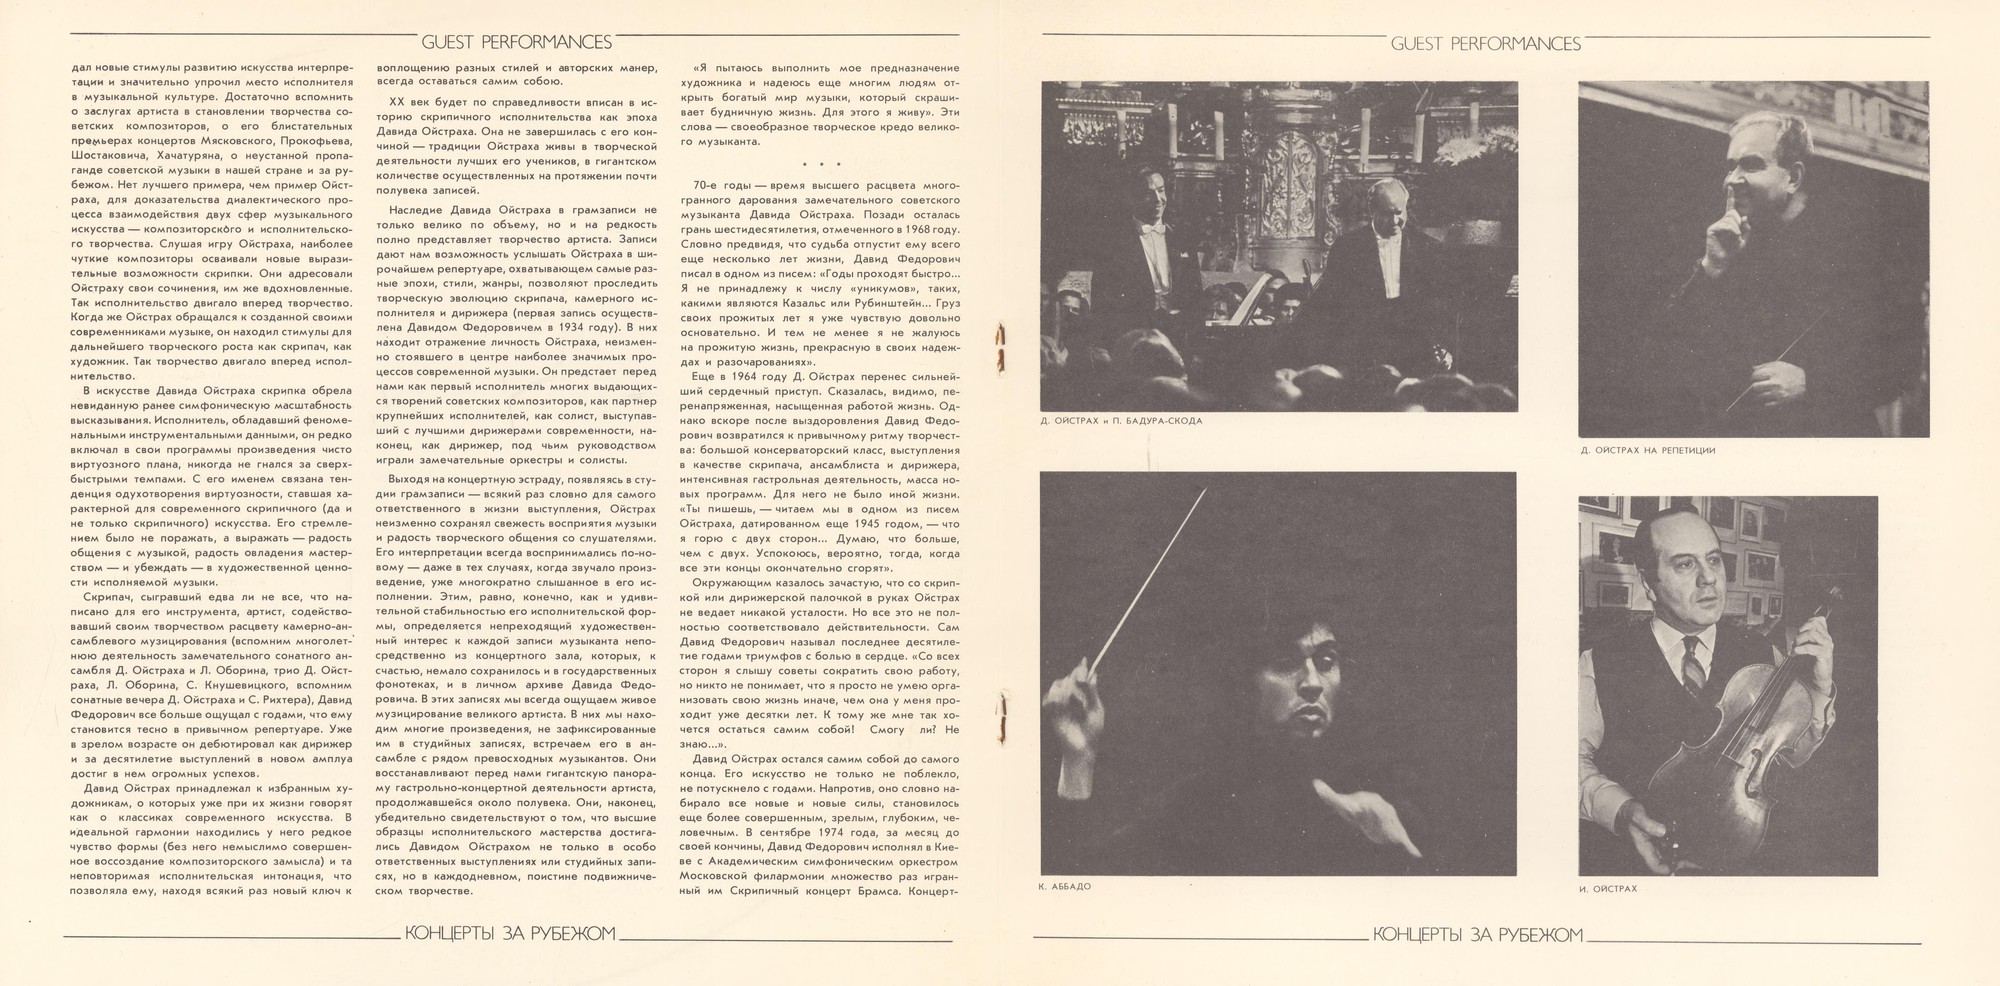 Давид ОЙСТРАХ. Полное собрание записей (часть III, комплект 11 - Концерты в Вене, 1972). В. А. Моцарт